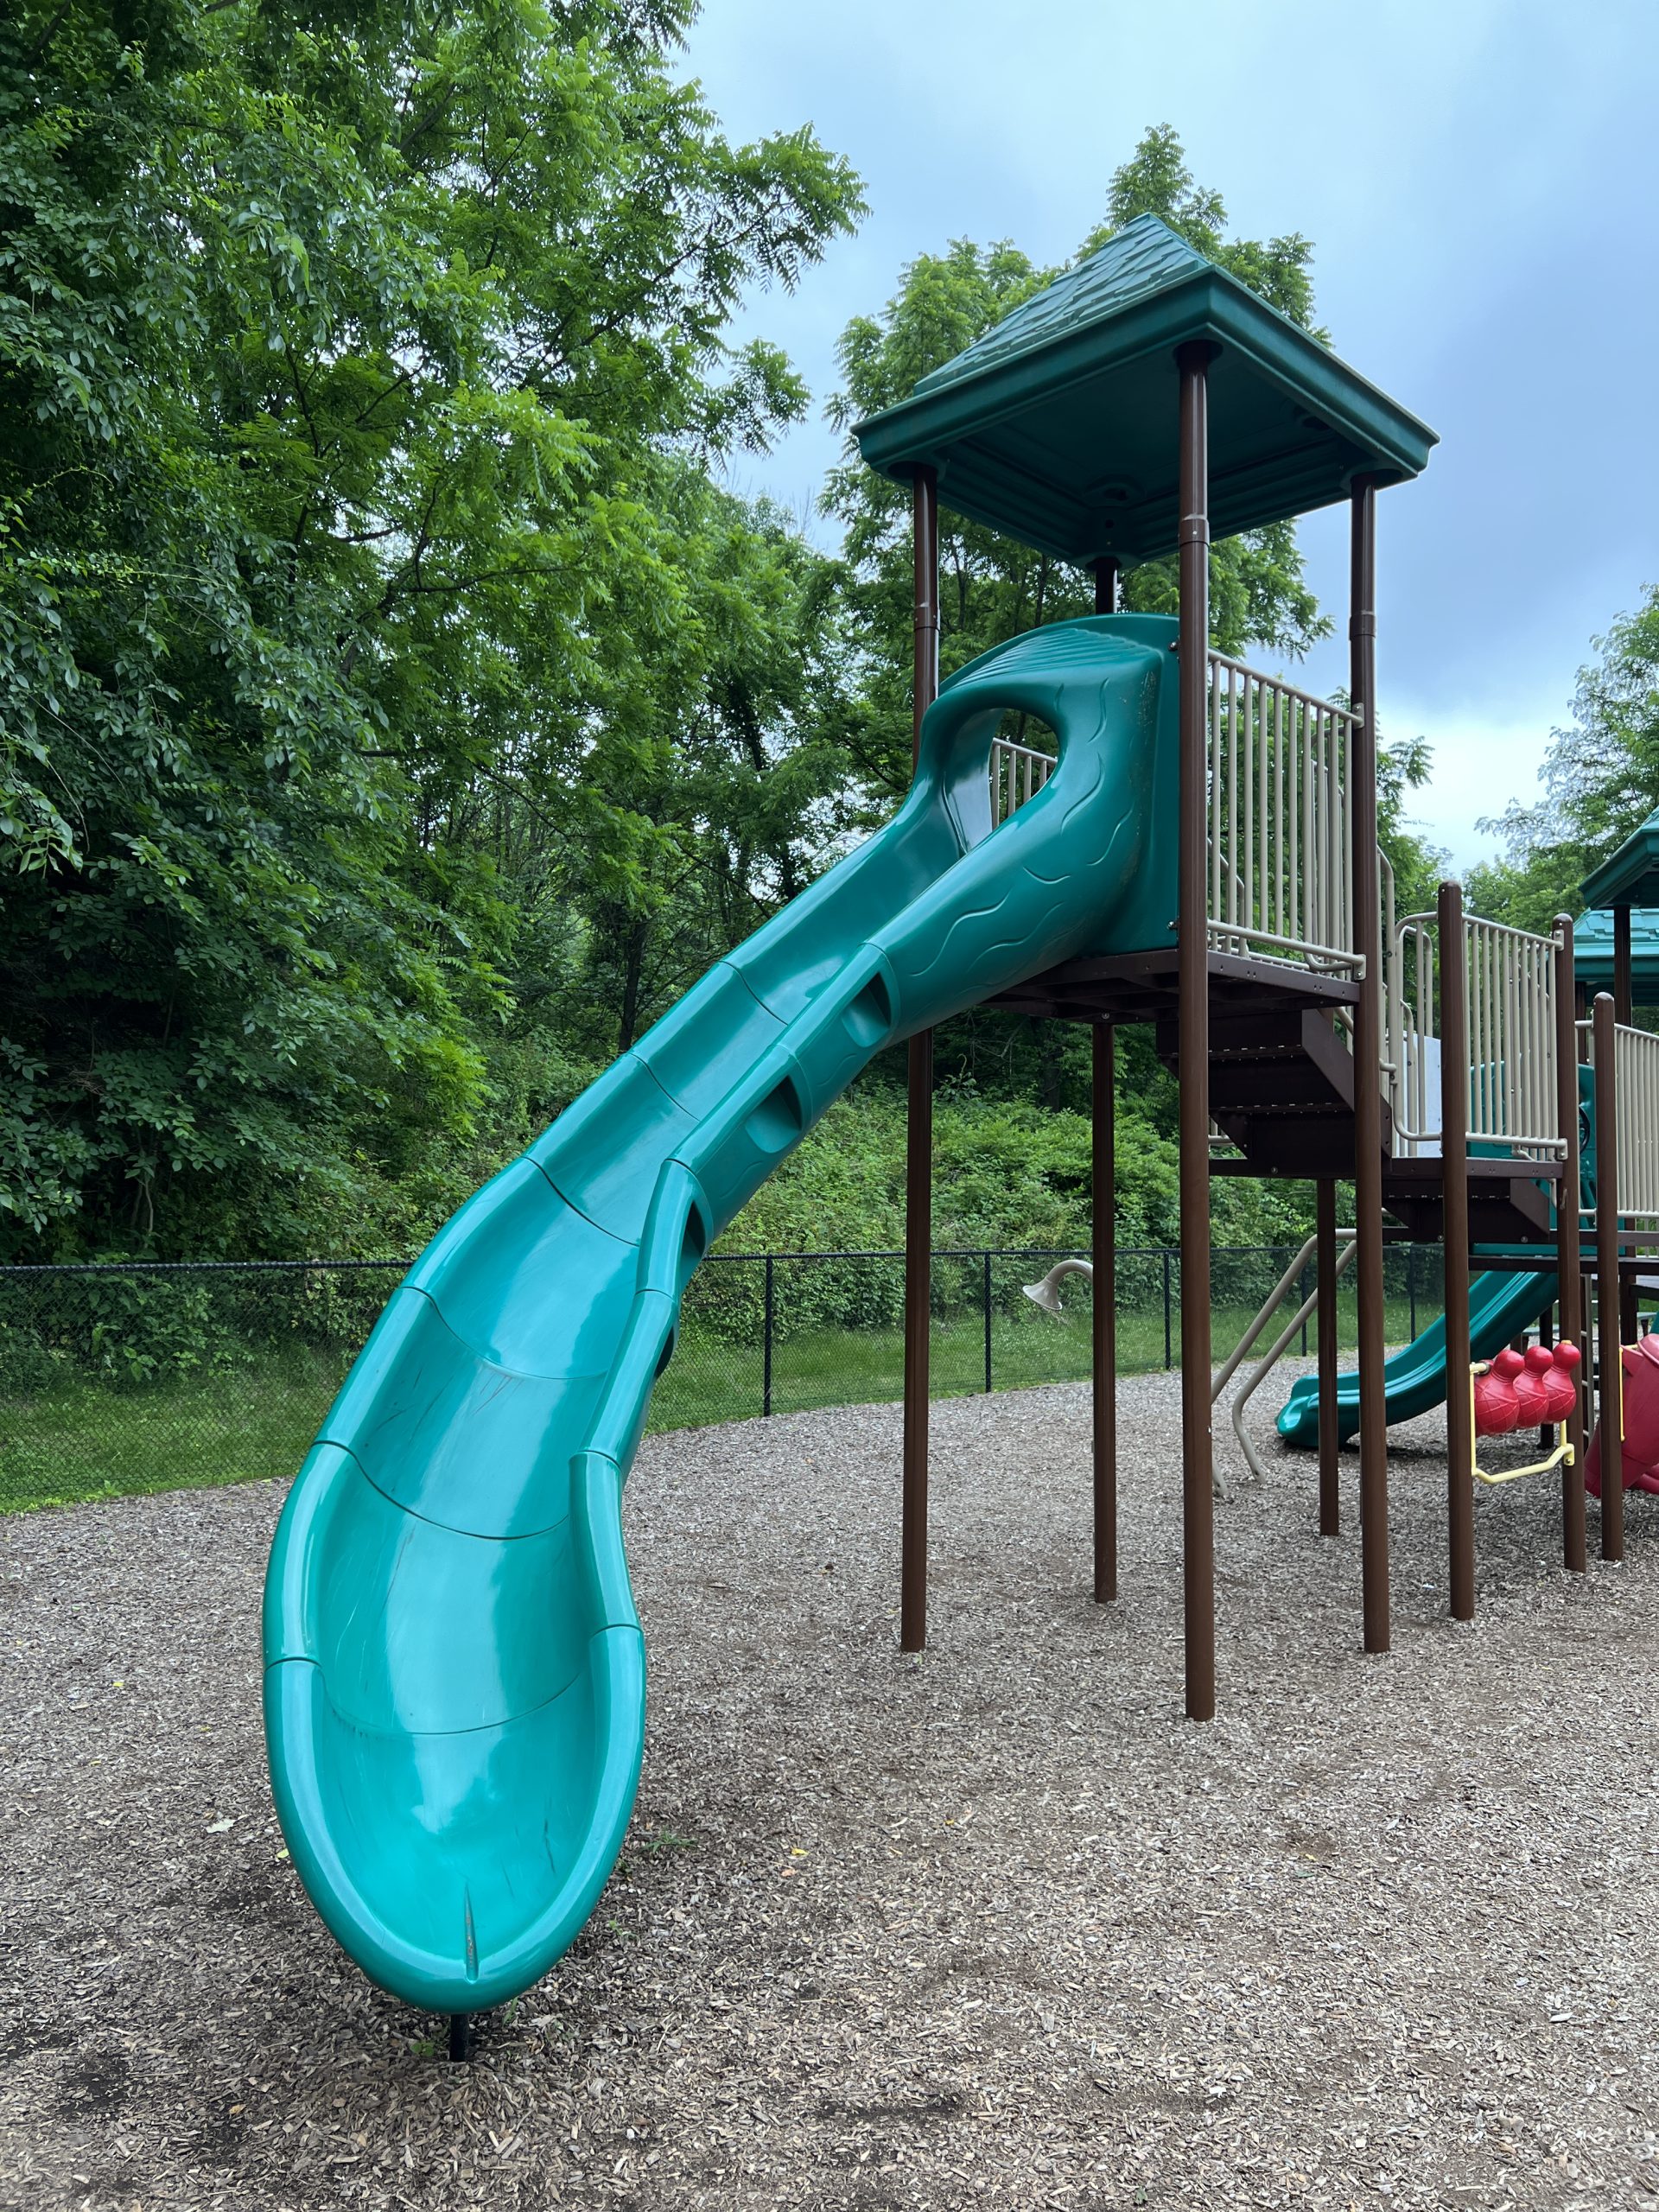 Second Curvy Slide for older kids at Kids Kastle Station Park Playground in Sparta NJ